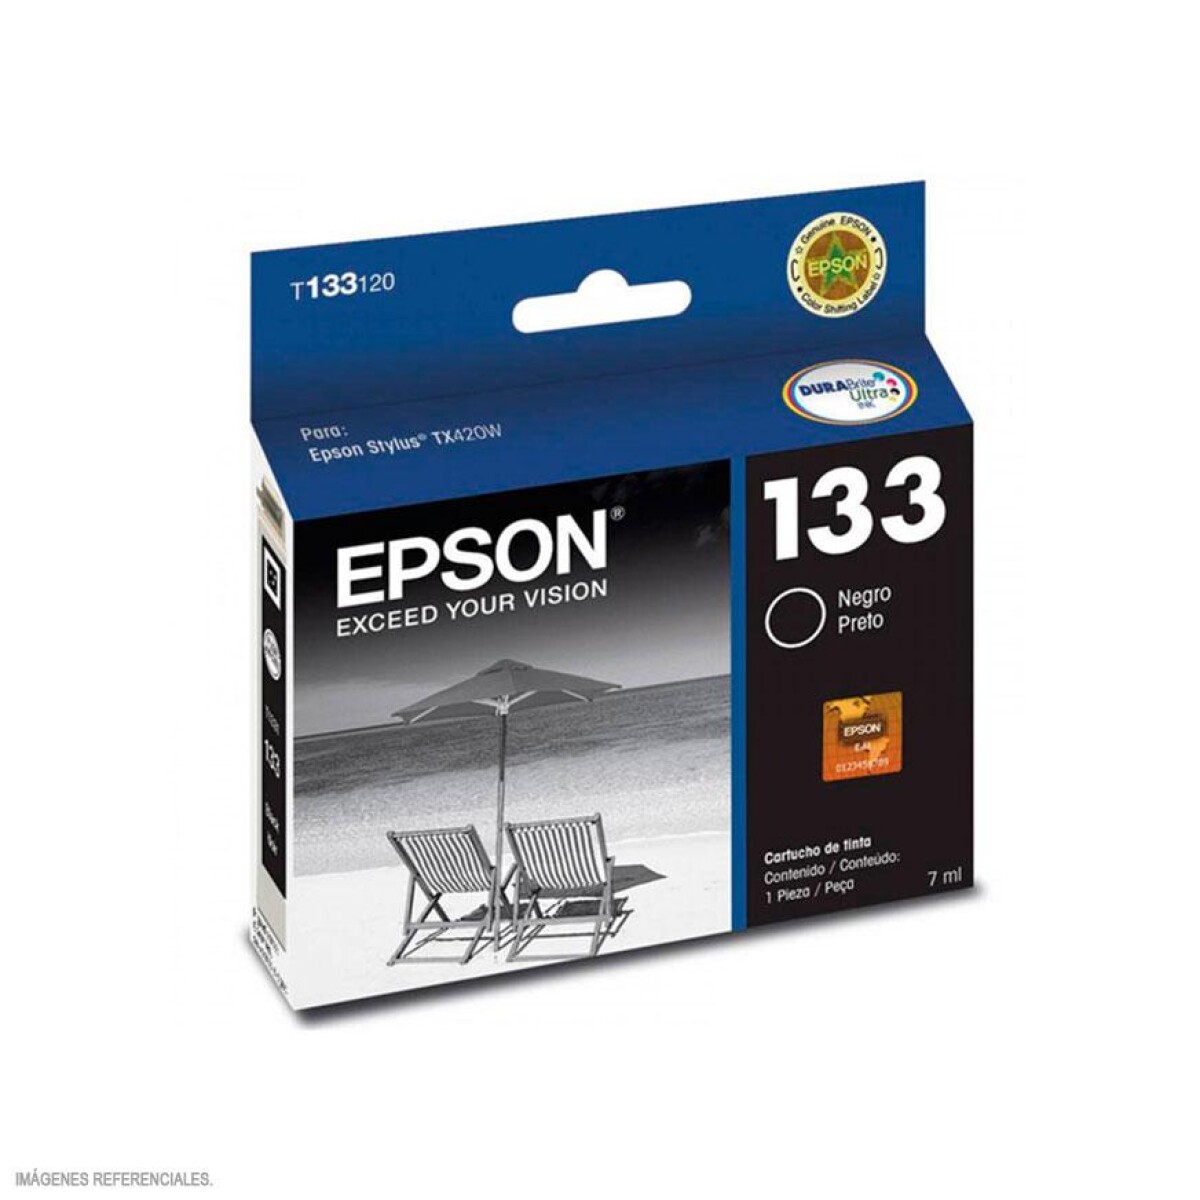 EPSON T133120 NEGRO TX235W/420W/430W/320F - 2460 